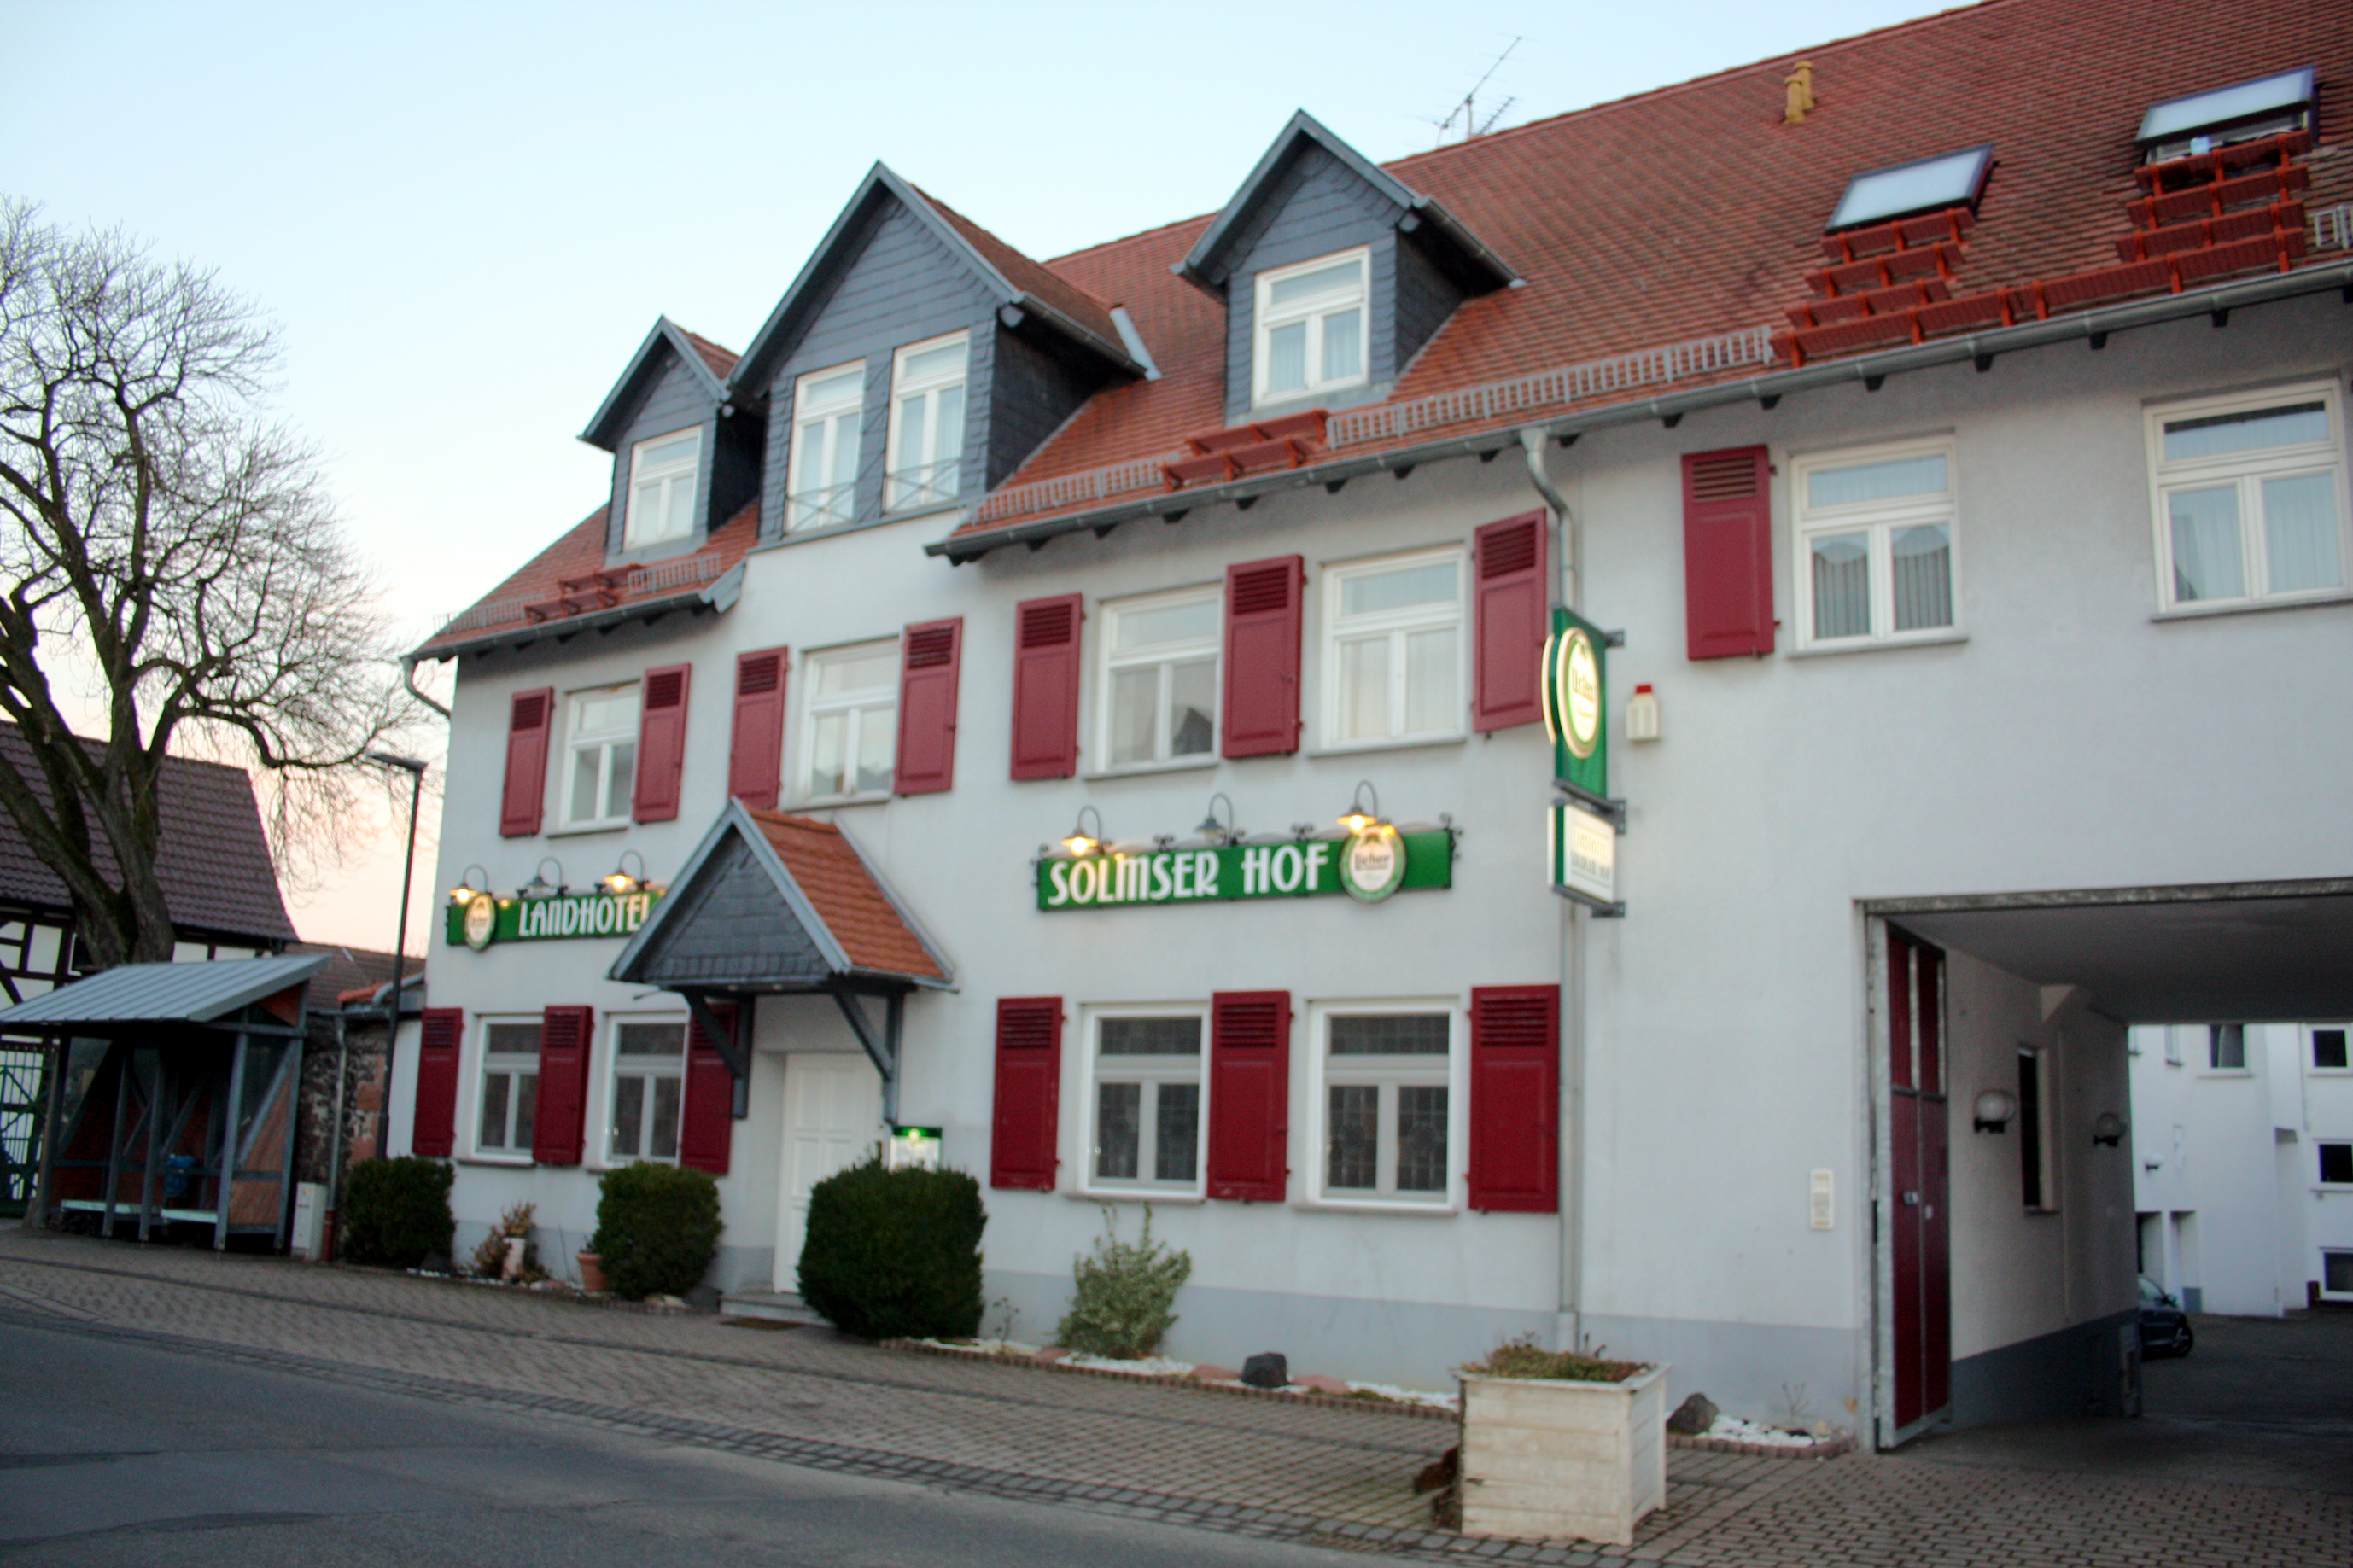 Solmser Hof, Echzell.
